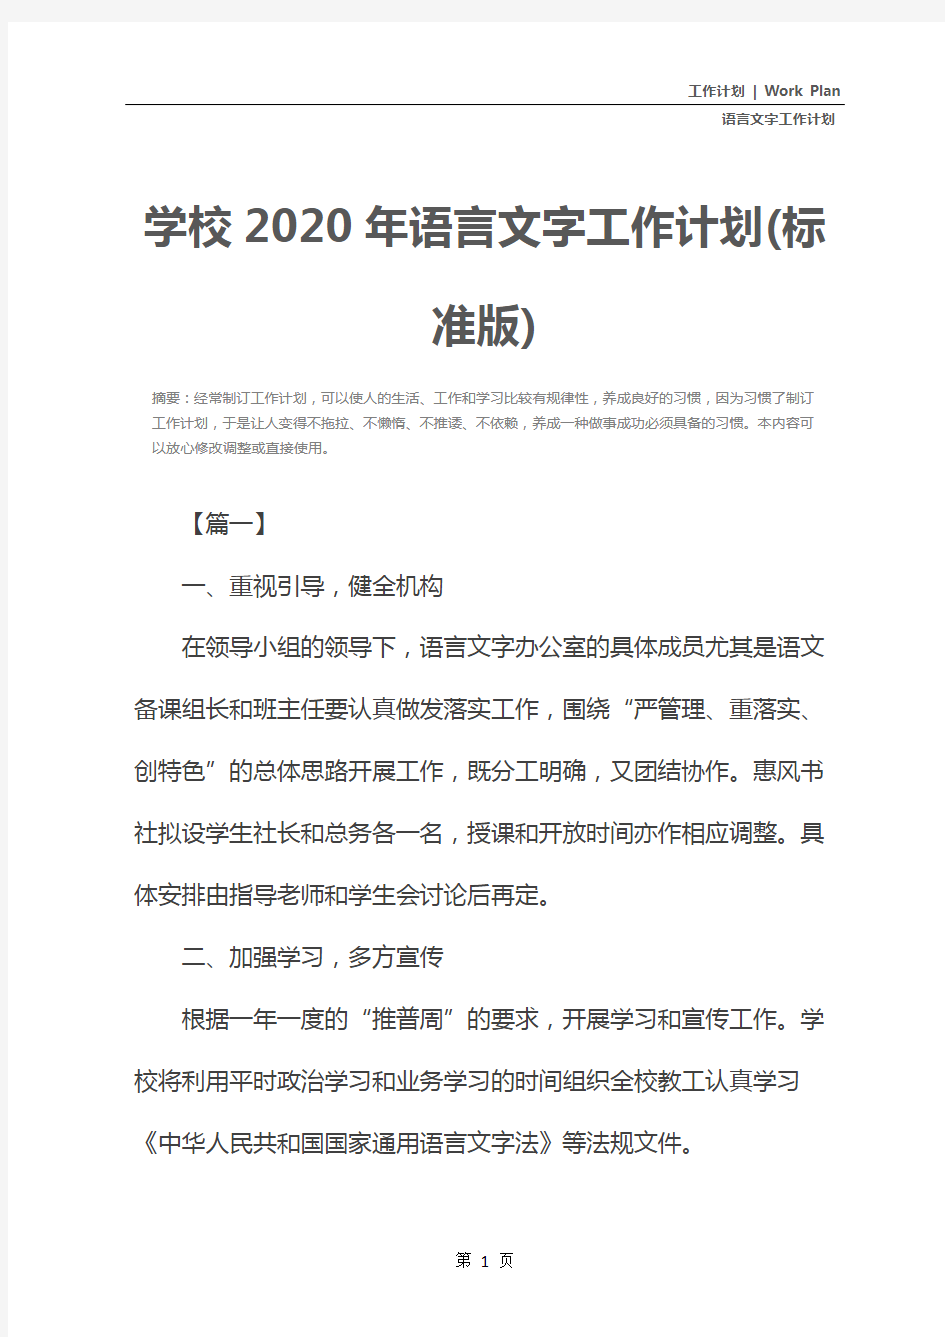 学校2020年语言文字工作计划(标准版)